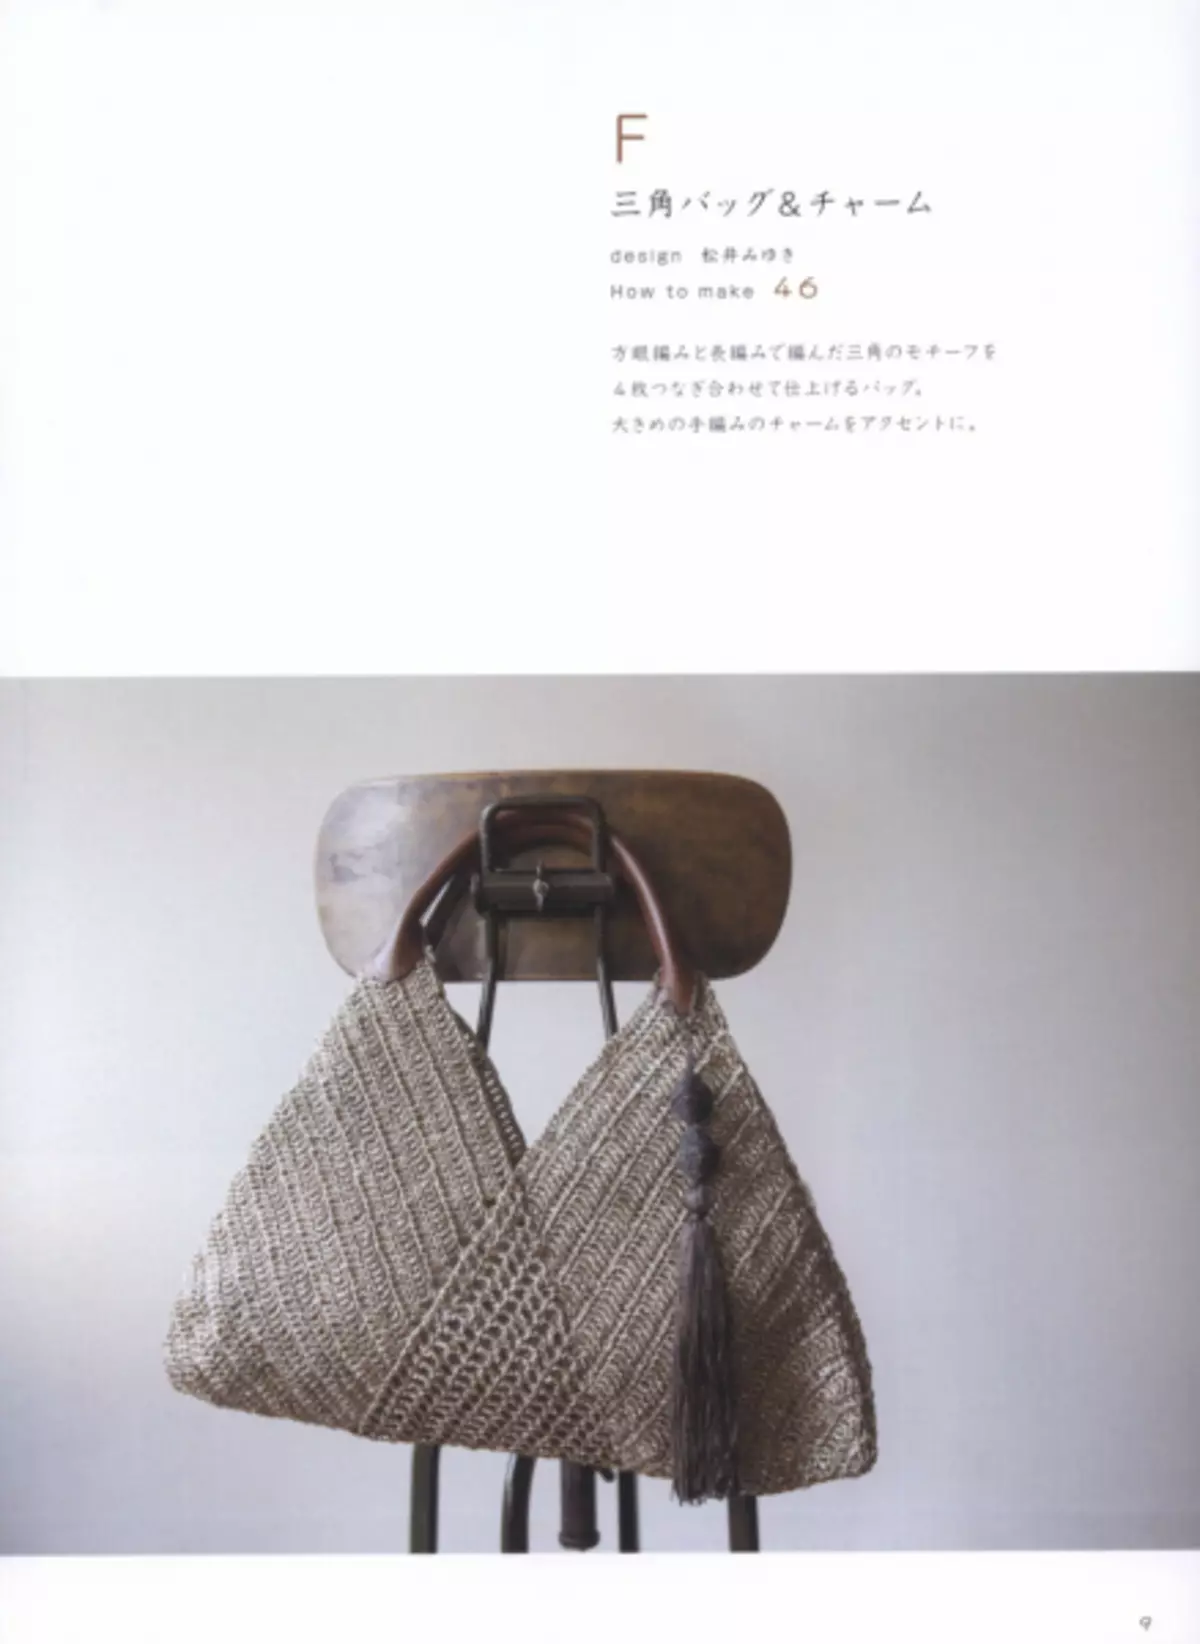 ခေါက်အိတ်များ။ Crochet Mania ၏အိတ်ဂျာနယ်